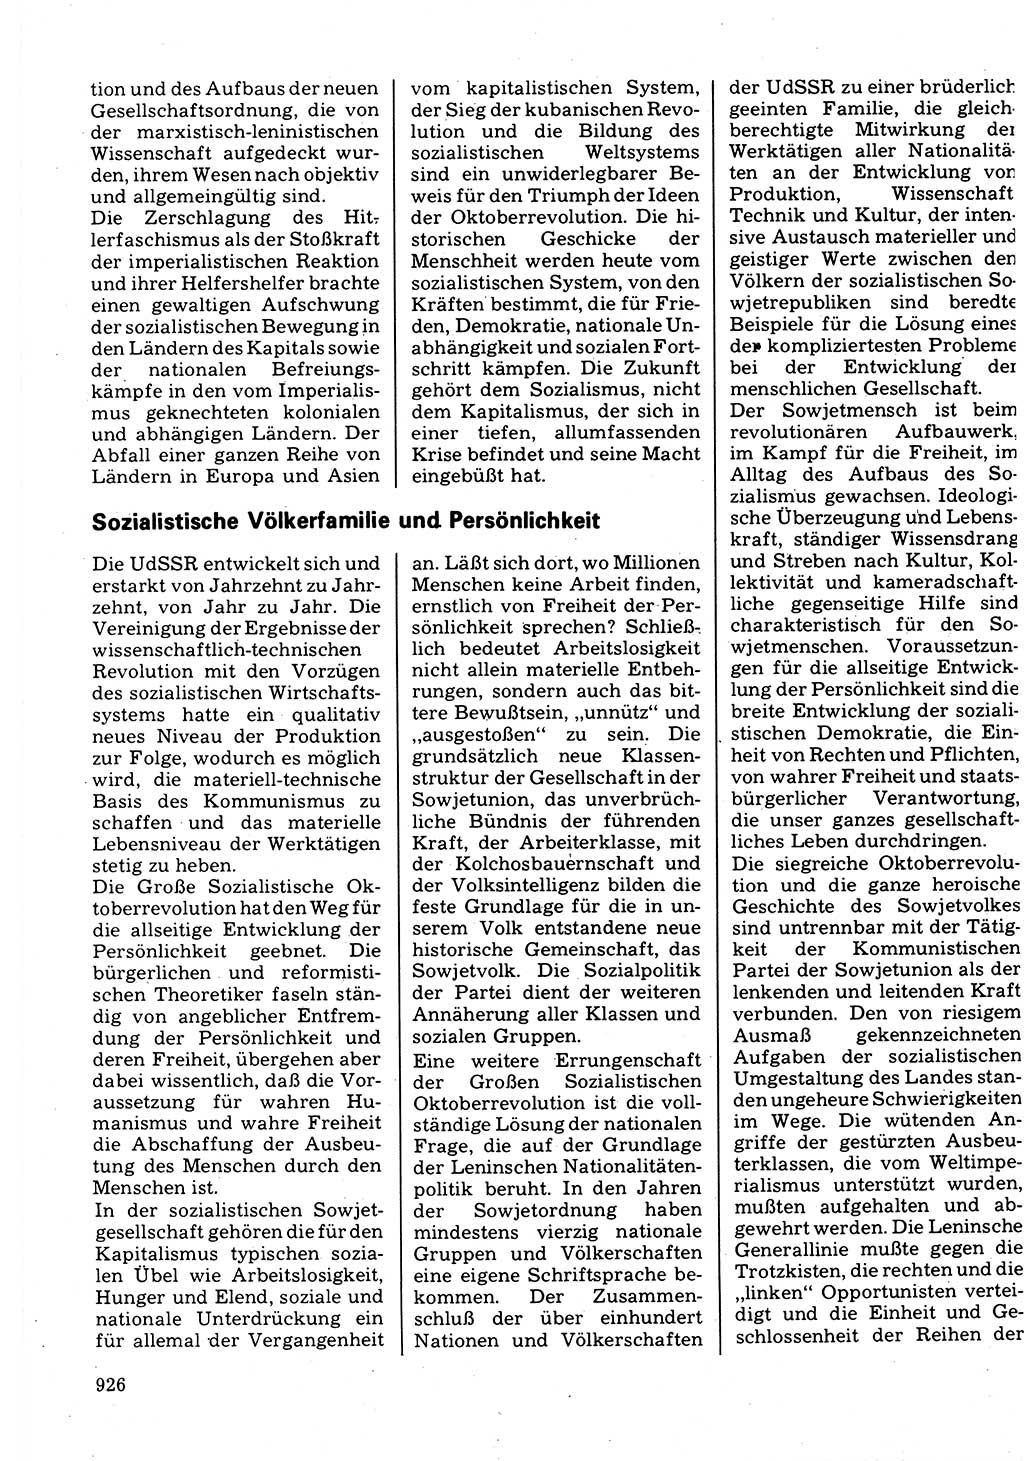 Neuer Weg (NW), Organ des Zentralkomitees (ZK) der SED (Sozialistische Einheitspartei Deutschlands) für Fragen des Parteilebens, 32. Jahrgang [Deutsche Demokratische Republik (DDR)] 1977, Seite 926 (NW ZK SED DDR 1977, S. 926)